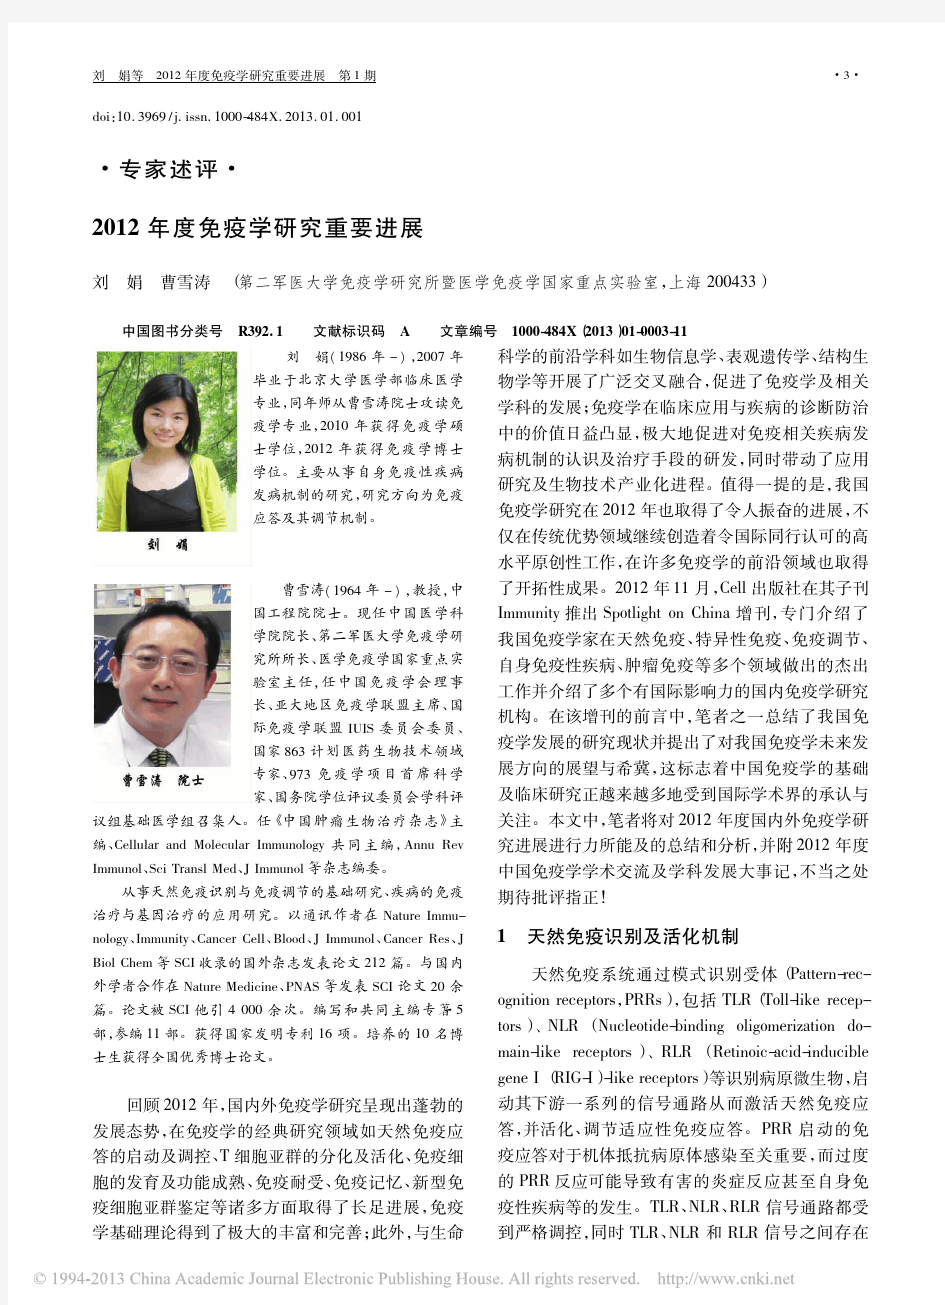 2012年度免疫学研究重要进展_刘娟